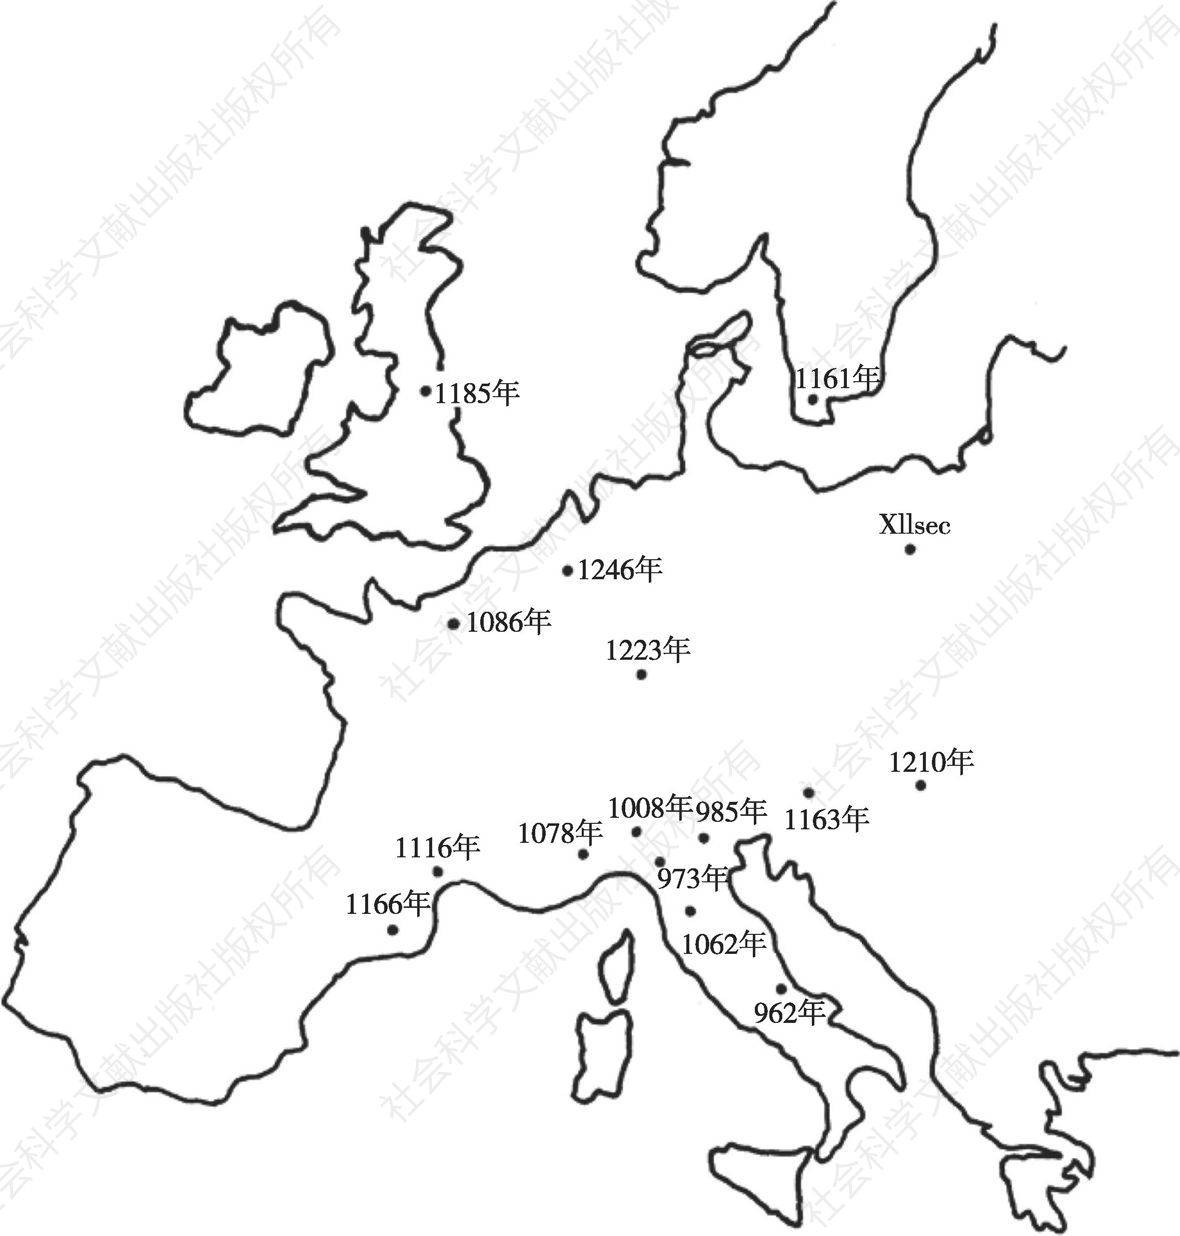 缩绒机在欧洲各地的分布，保罗·马拉尼马（Paolo Malanima）